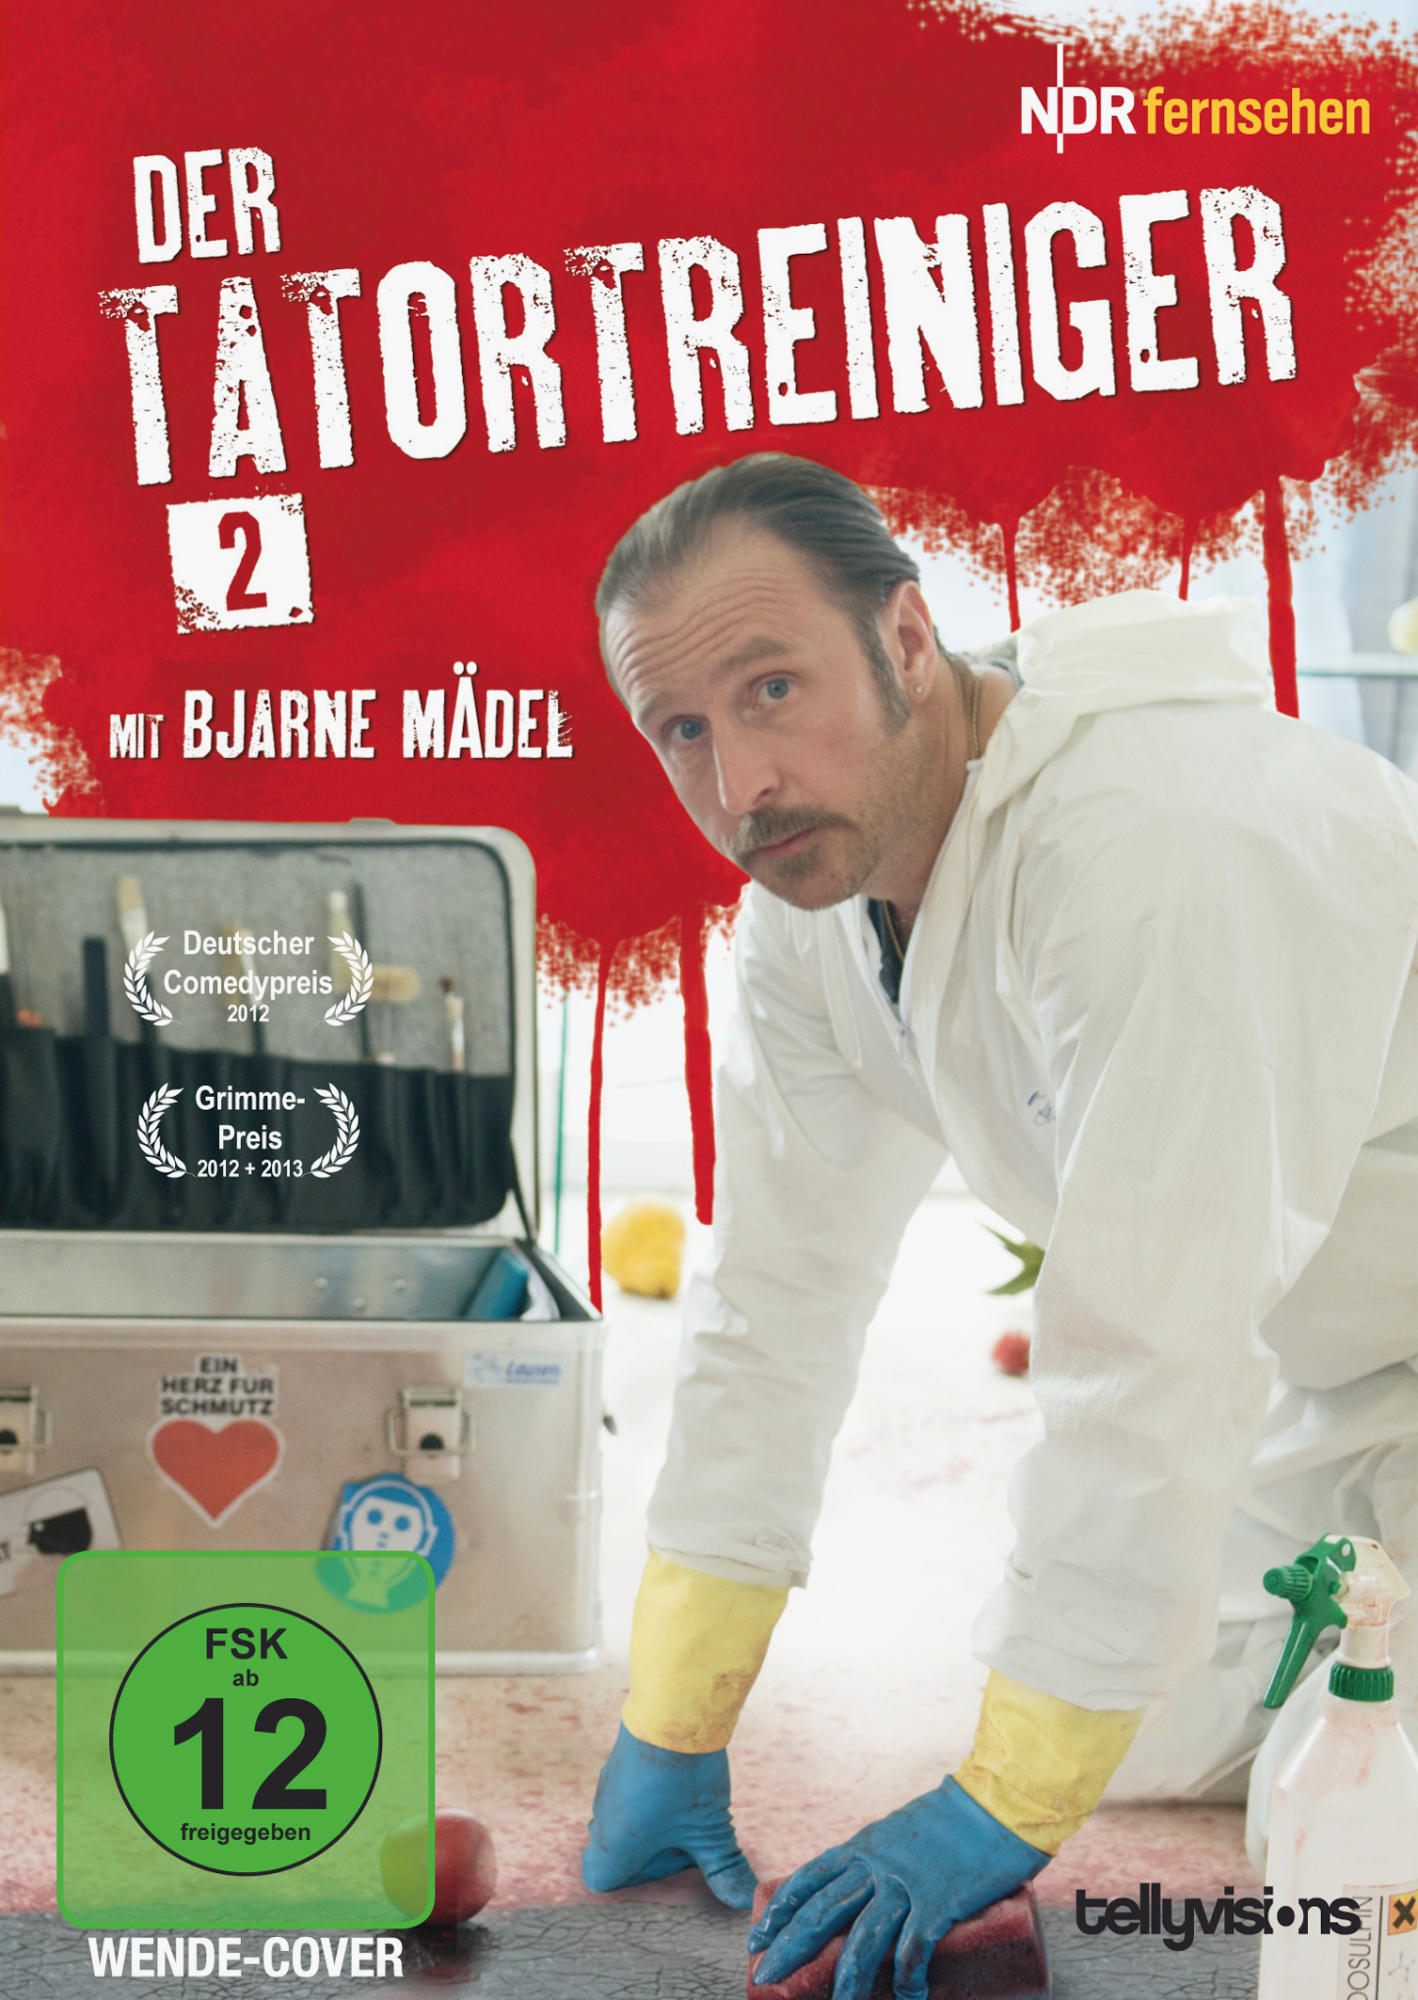 2 Der DVD Staffel - Tatortreiniger